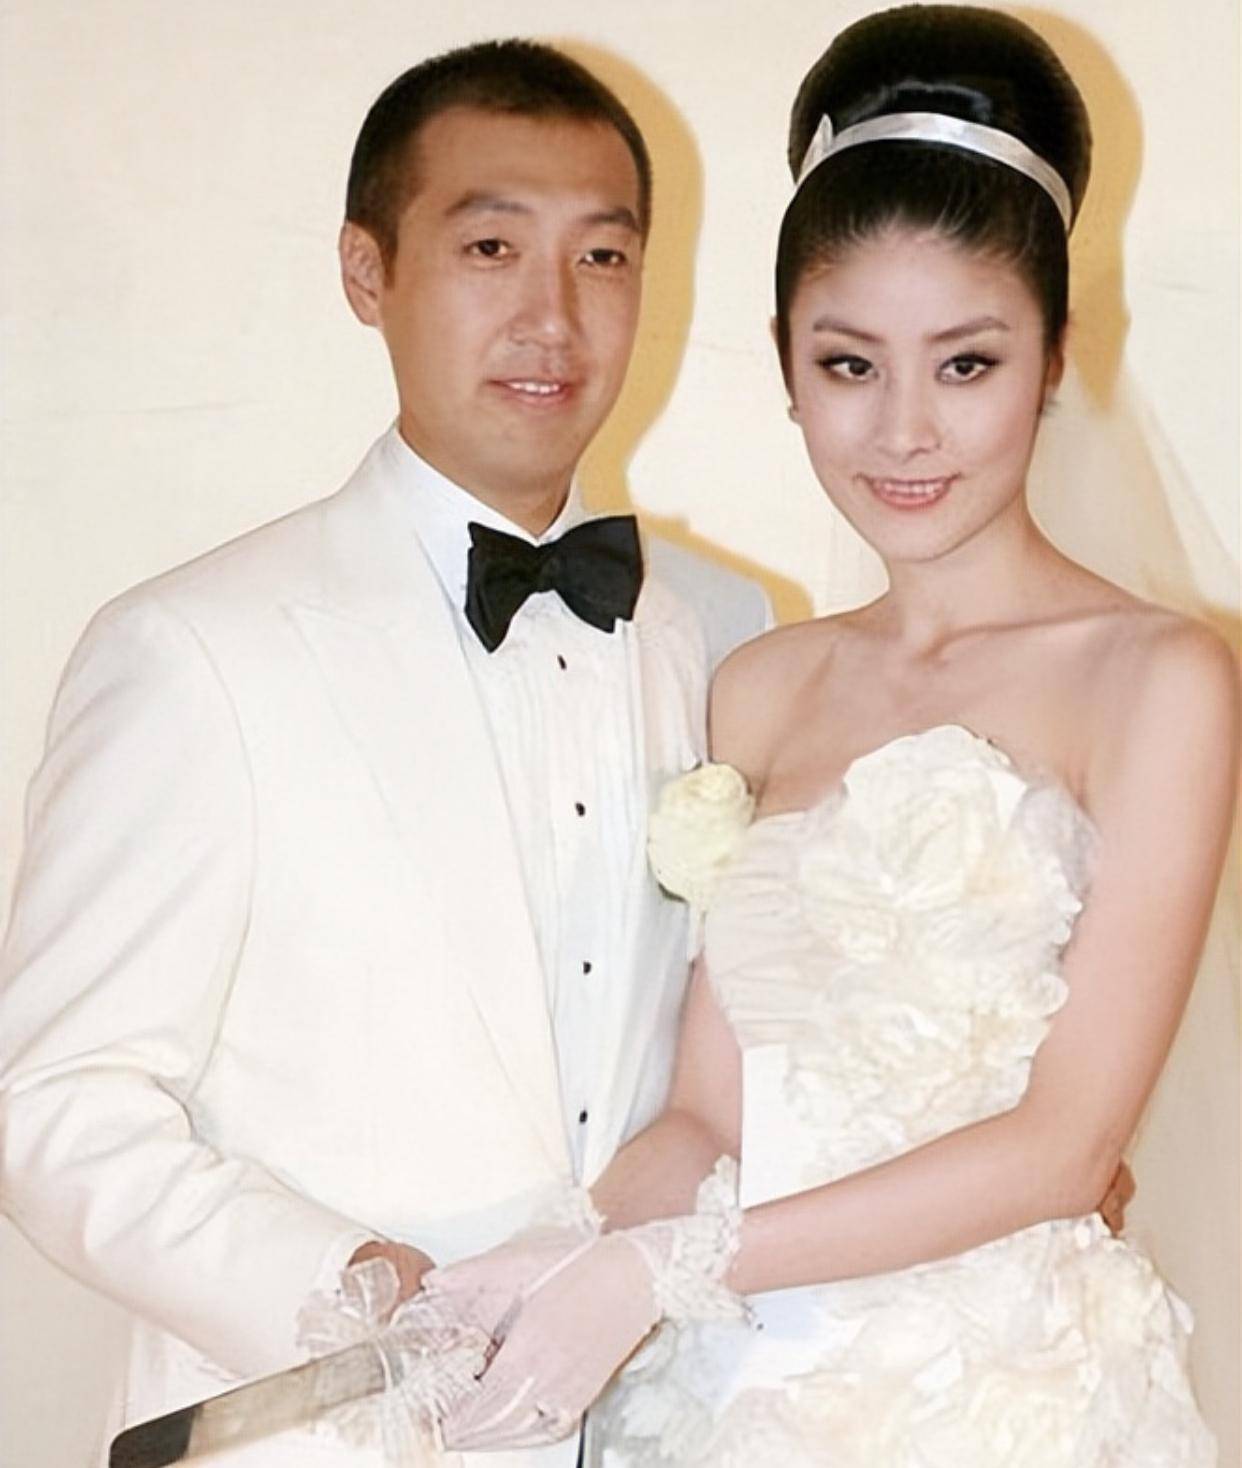 虽然嫁入了豪门,可陈慧琳从未放弃过自己的事业,丈夫刘建浩也从未干涉